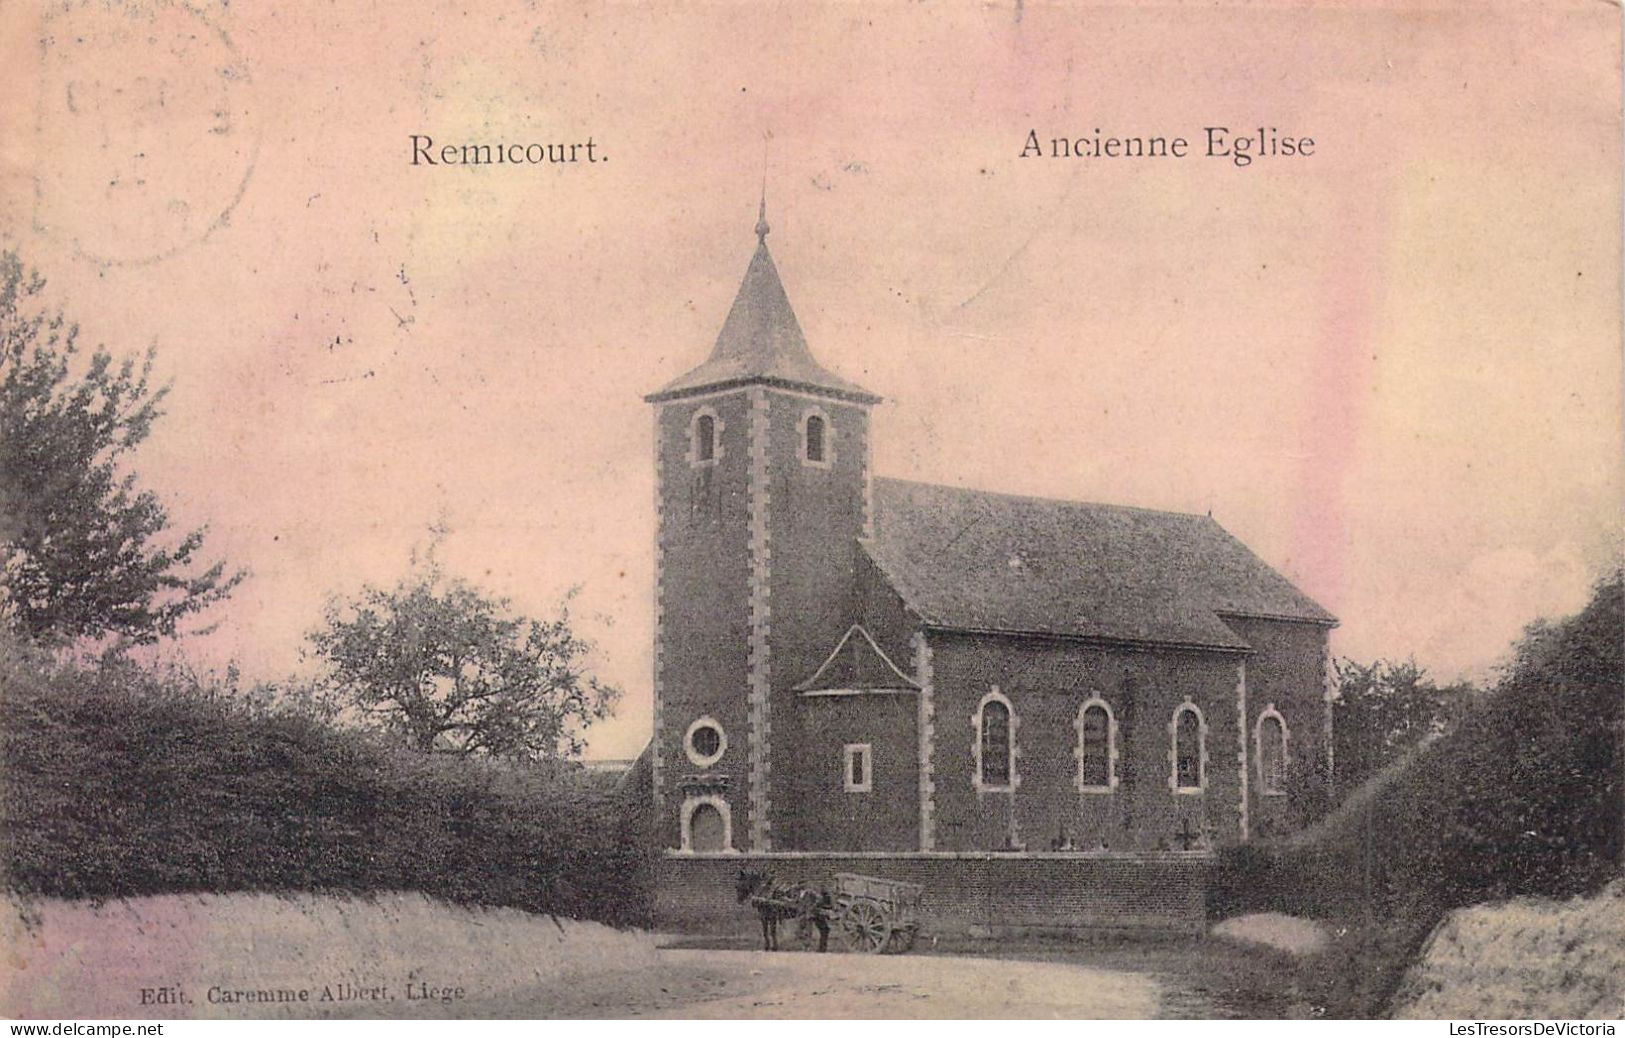 BELGIQUE - REMICOURT - Ancienne Eglise - Edit Caremme Albert - Carte Postale Ancienne - Remicourt